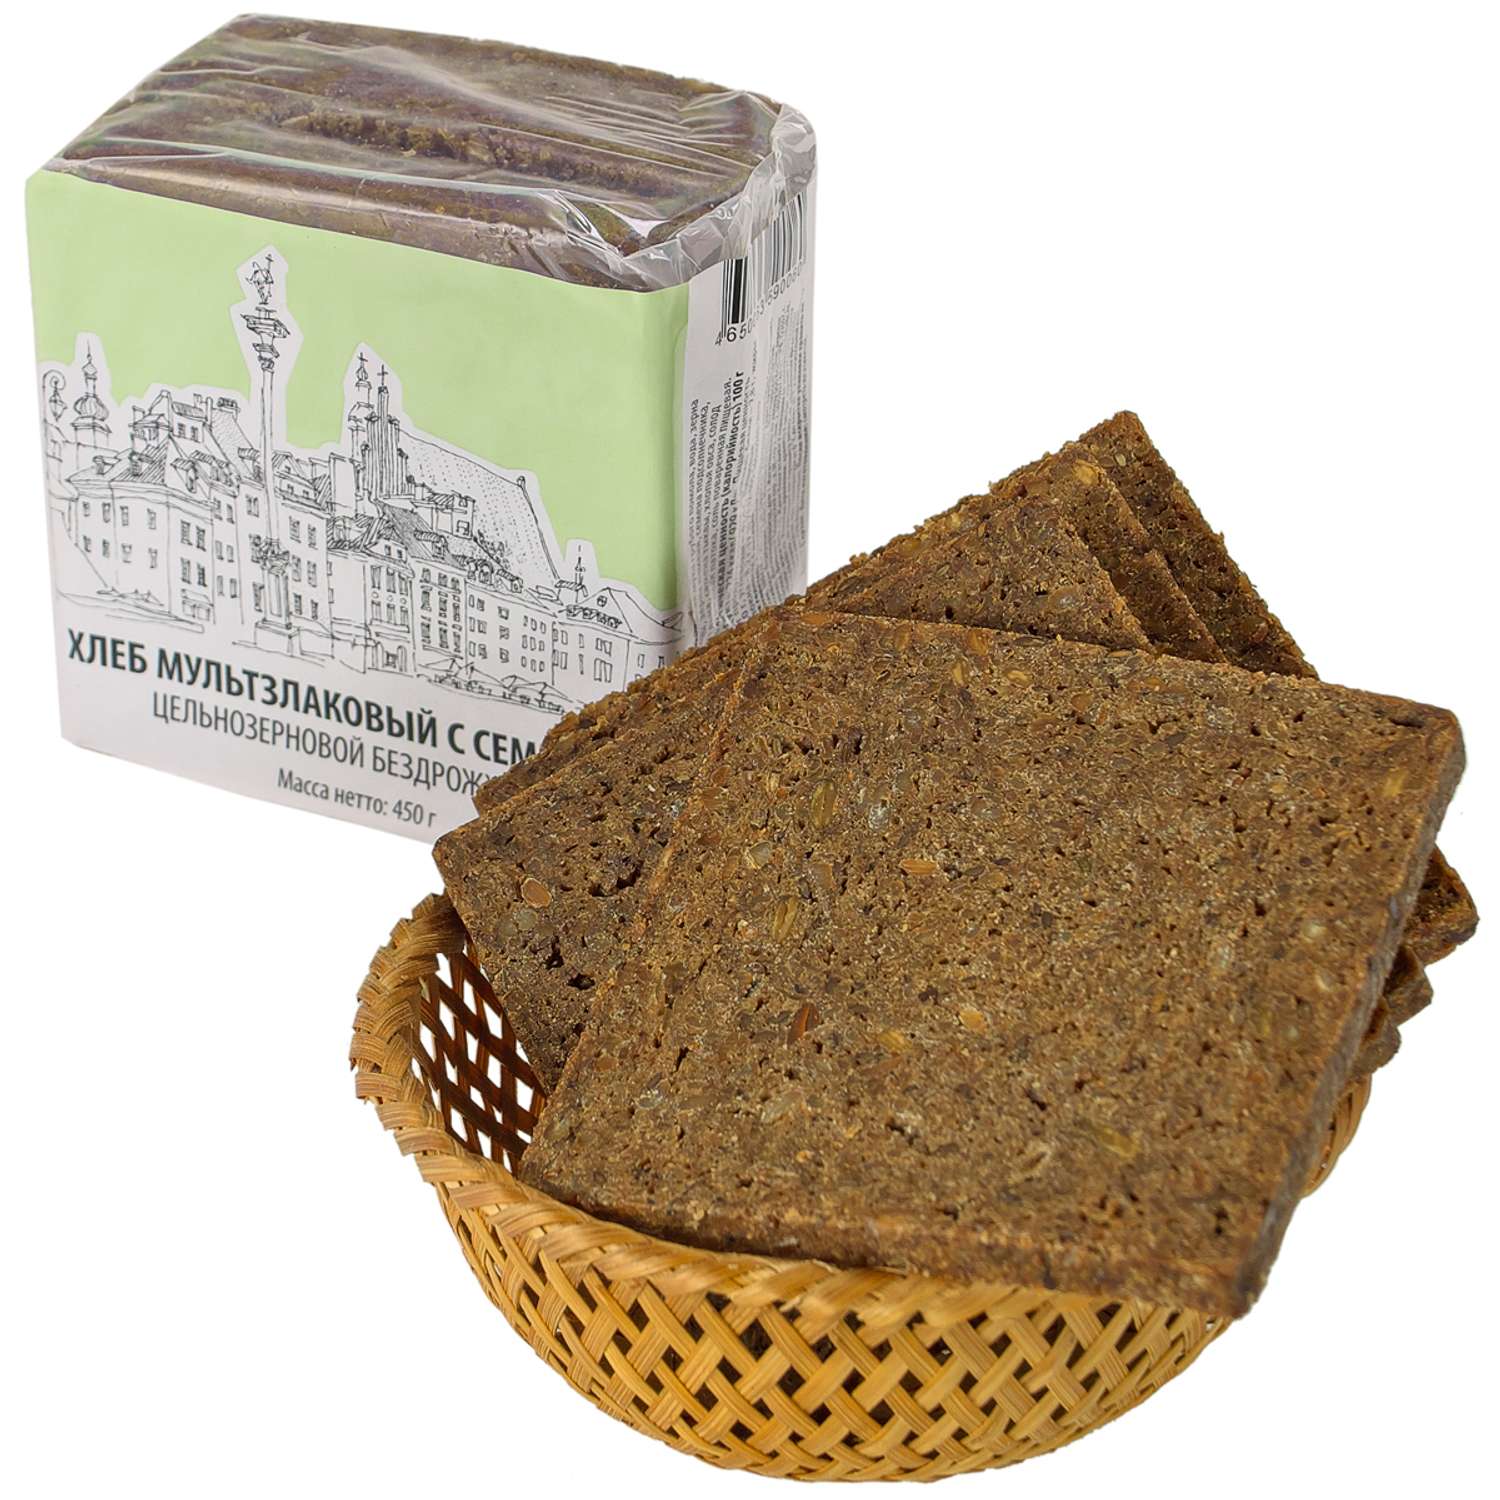 Хлеб Old Town мультизлаковый с семенами цельнозерновой бездрожжевой 450 г - фото 1